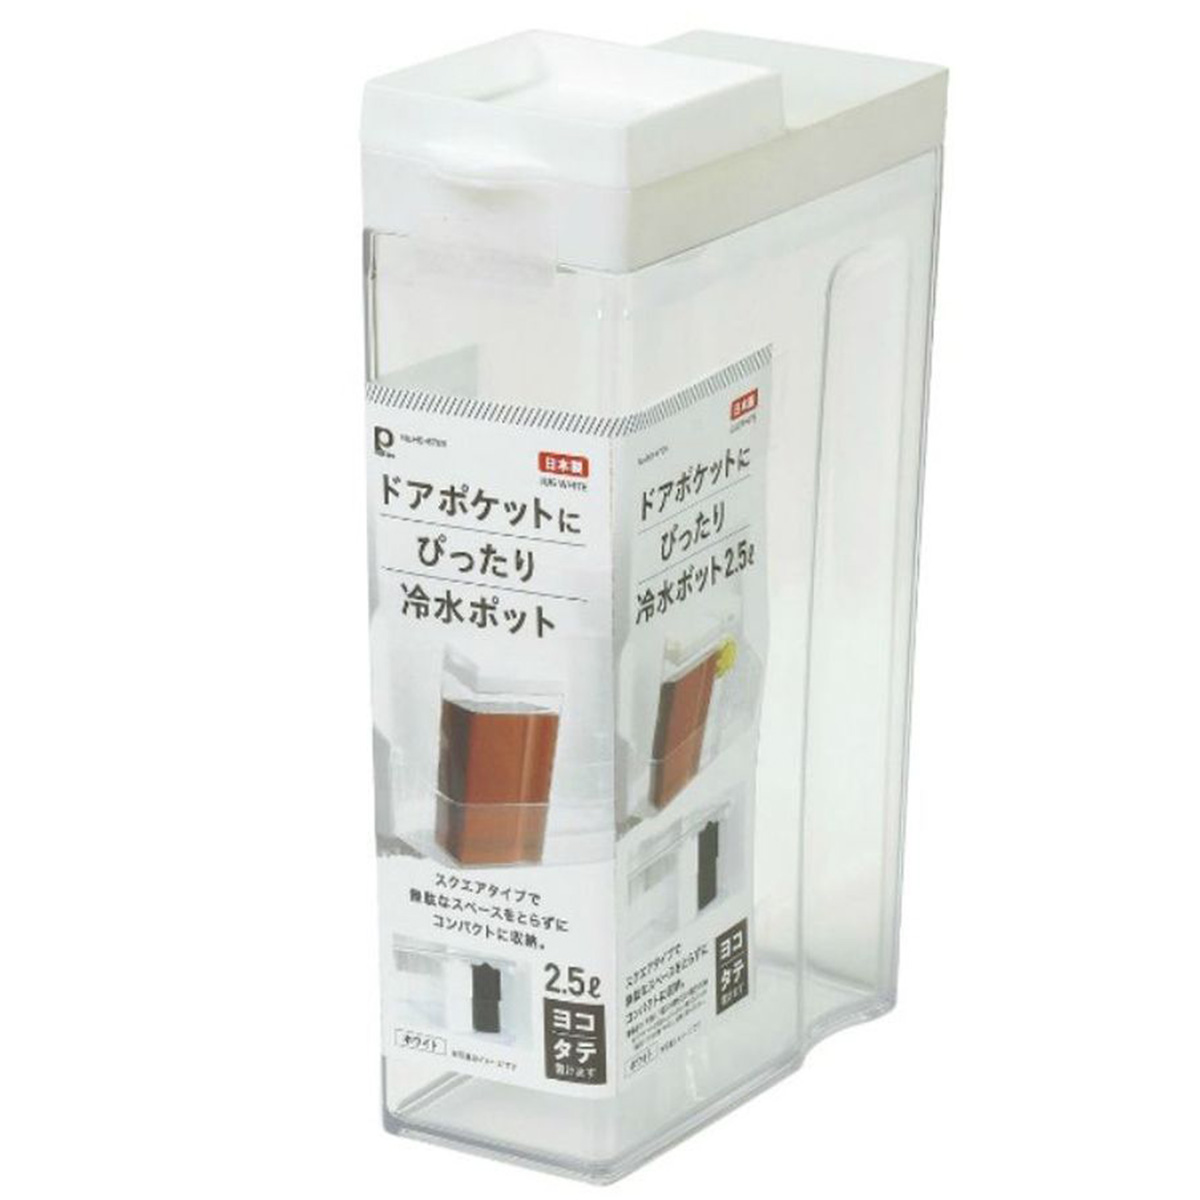 冷水ポット 冷水筒 ピッチャー 2.5L タテヨコ お茶 麦茶 日本製 ホワイト ドアポケットにぴったり